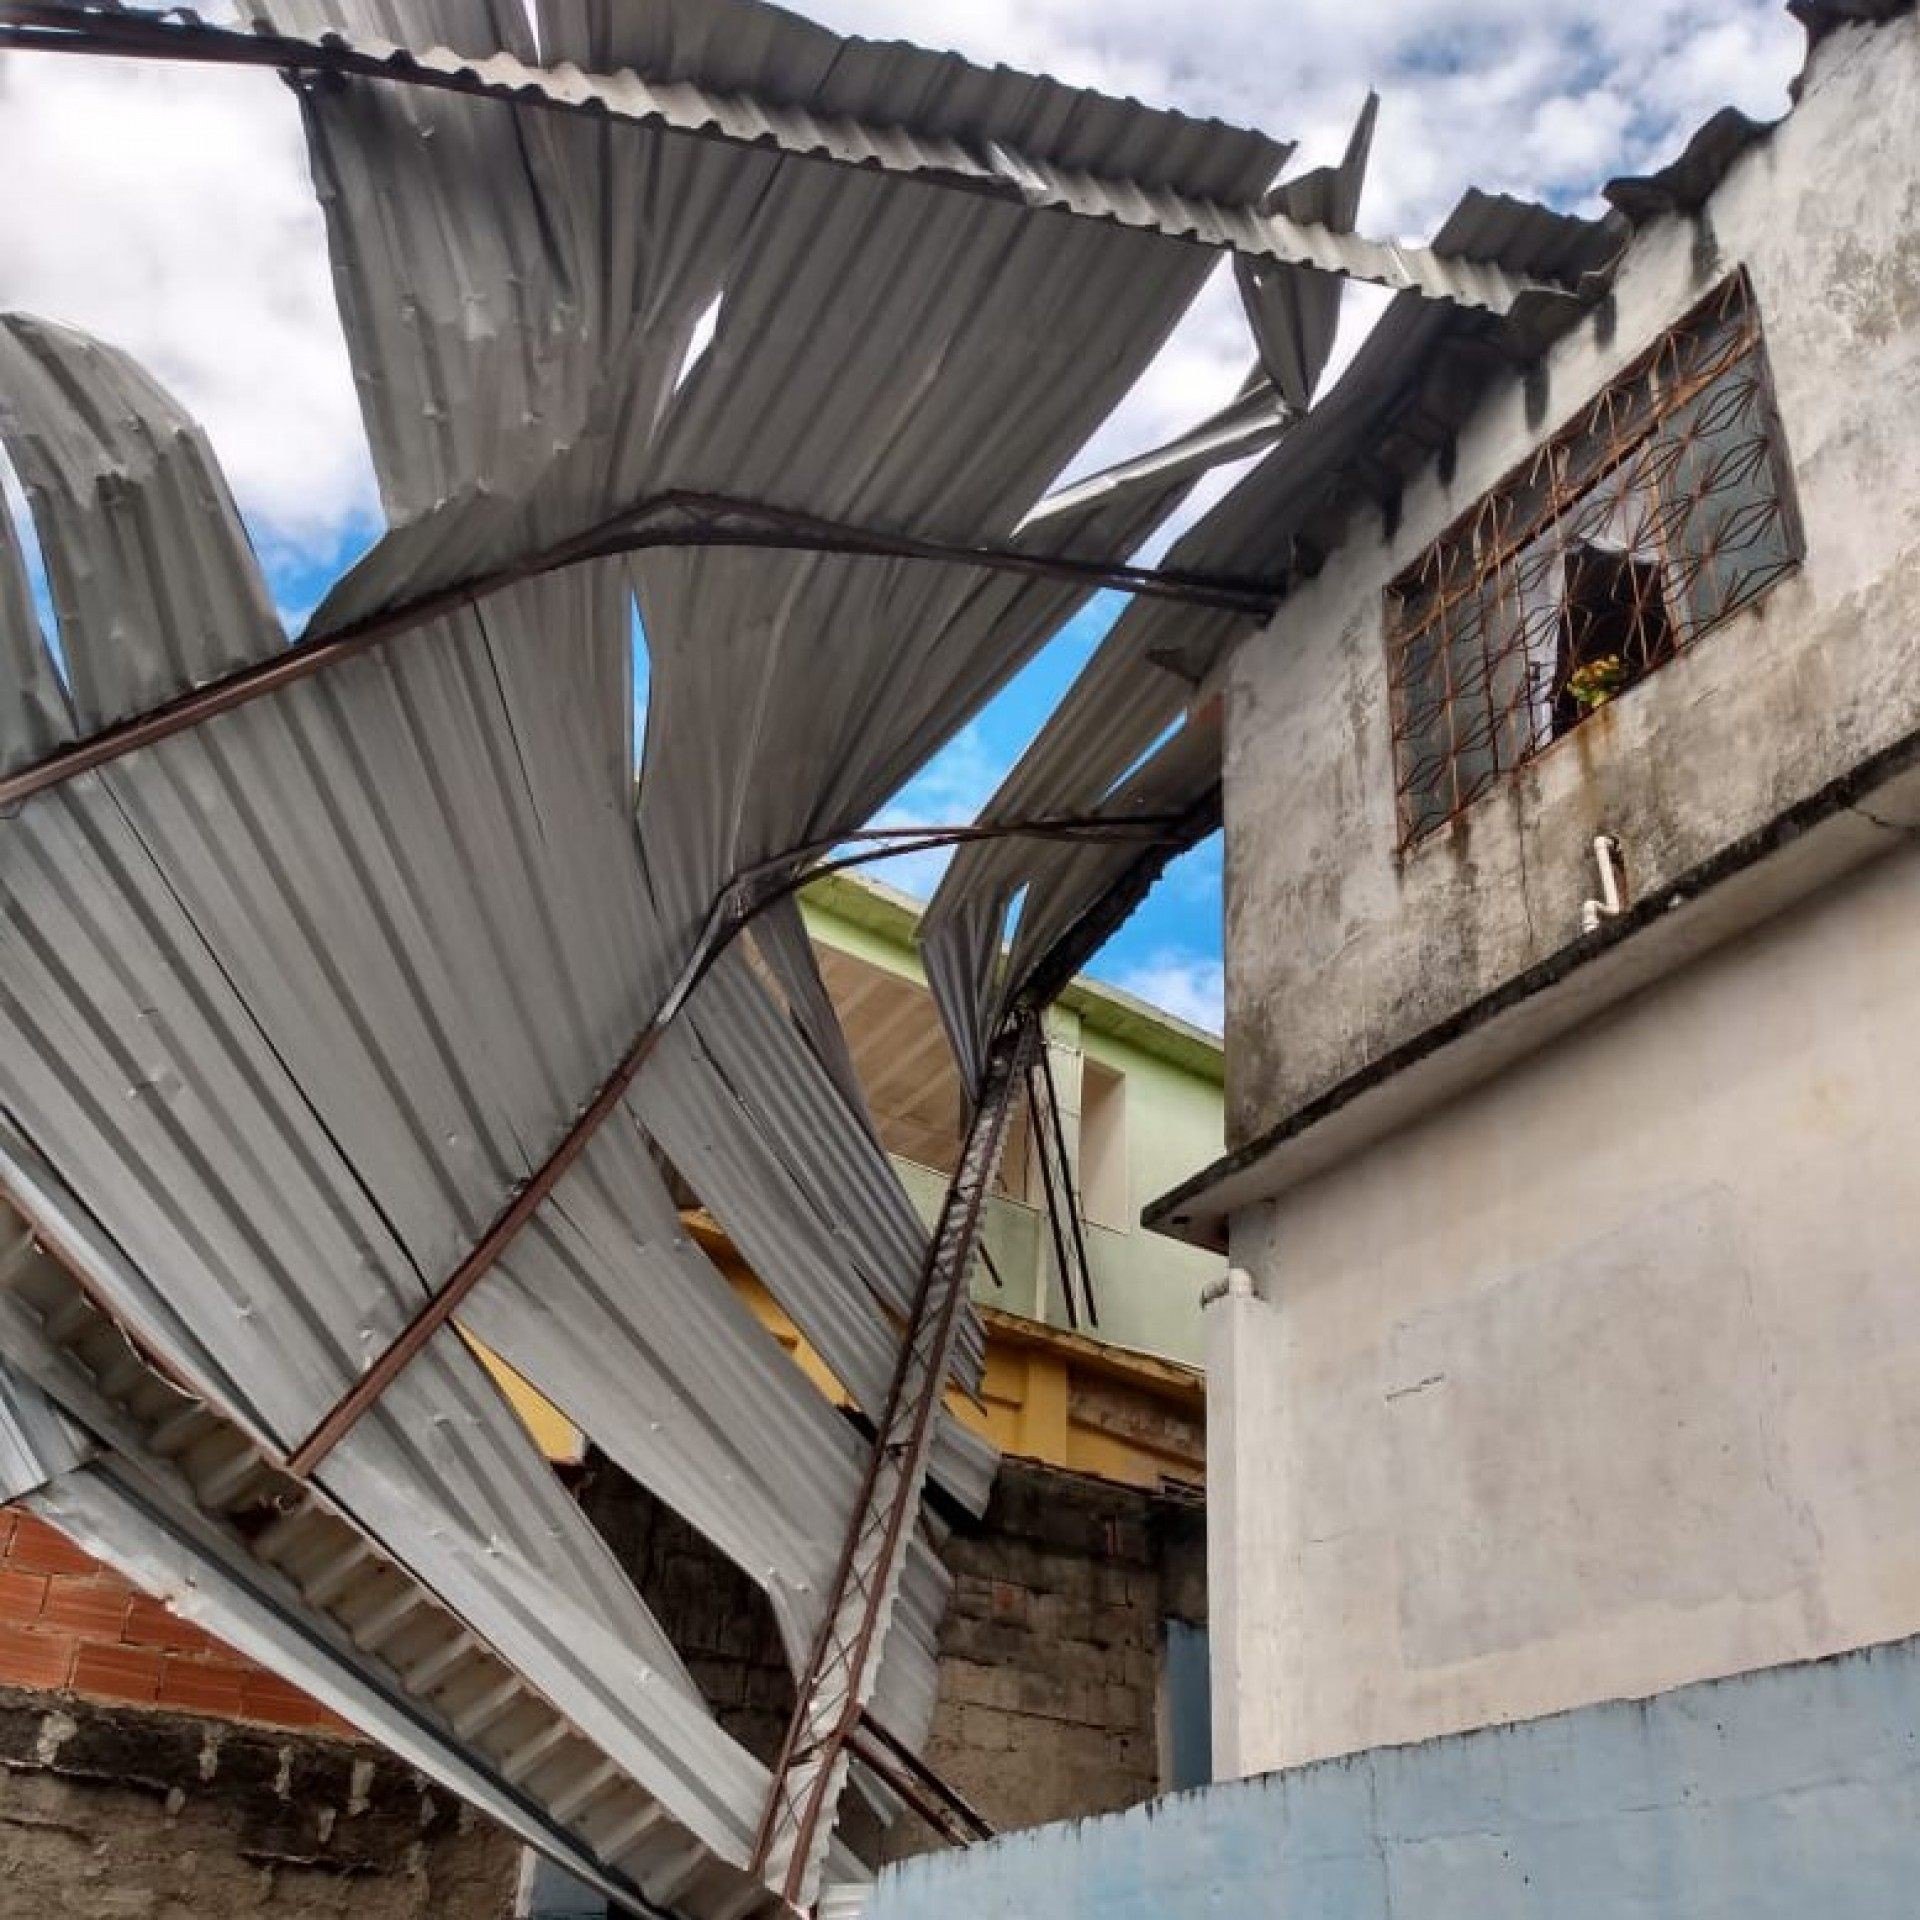 Em Meriti, além das árvores, um grande telhado foi arrancado de uma casa, oferecendo risco aos moradores do entorno - PMSJM